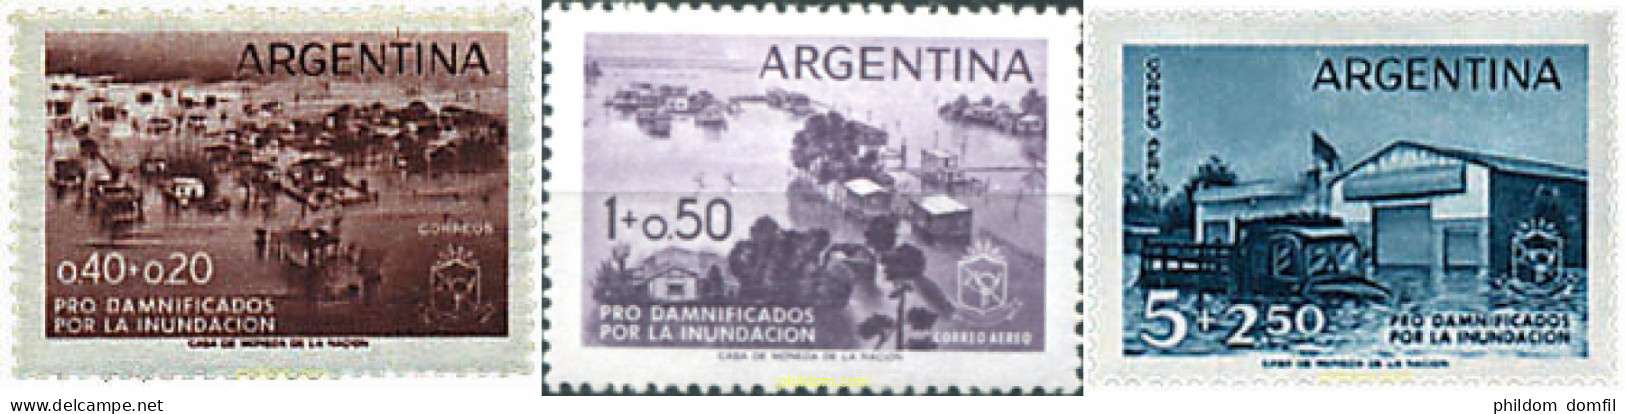 726232 HINGED ARGENTINA 1958 PRO-INUNDACIONES - Nuevos